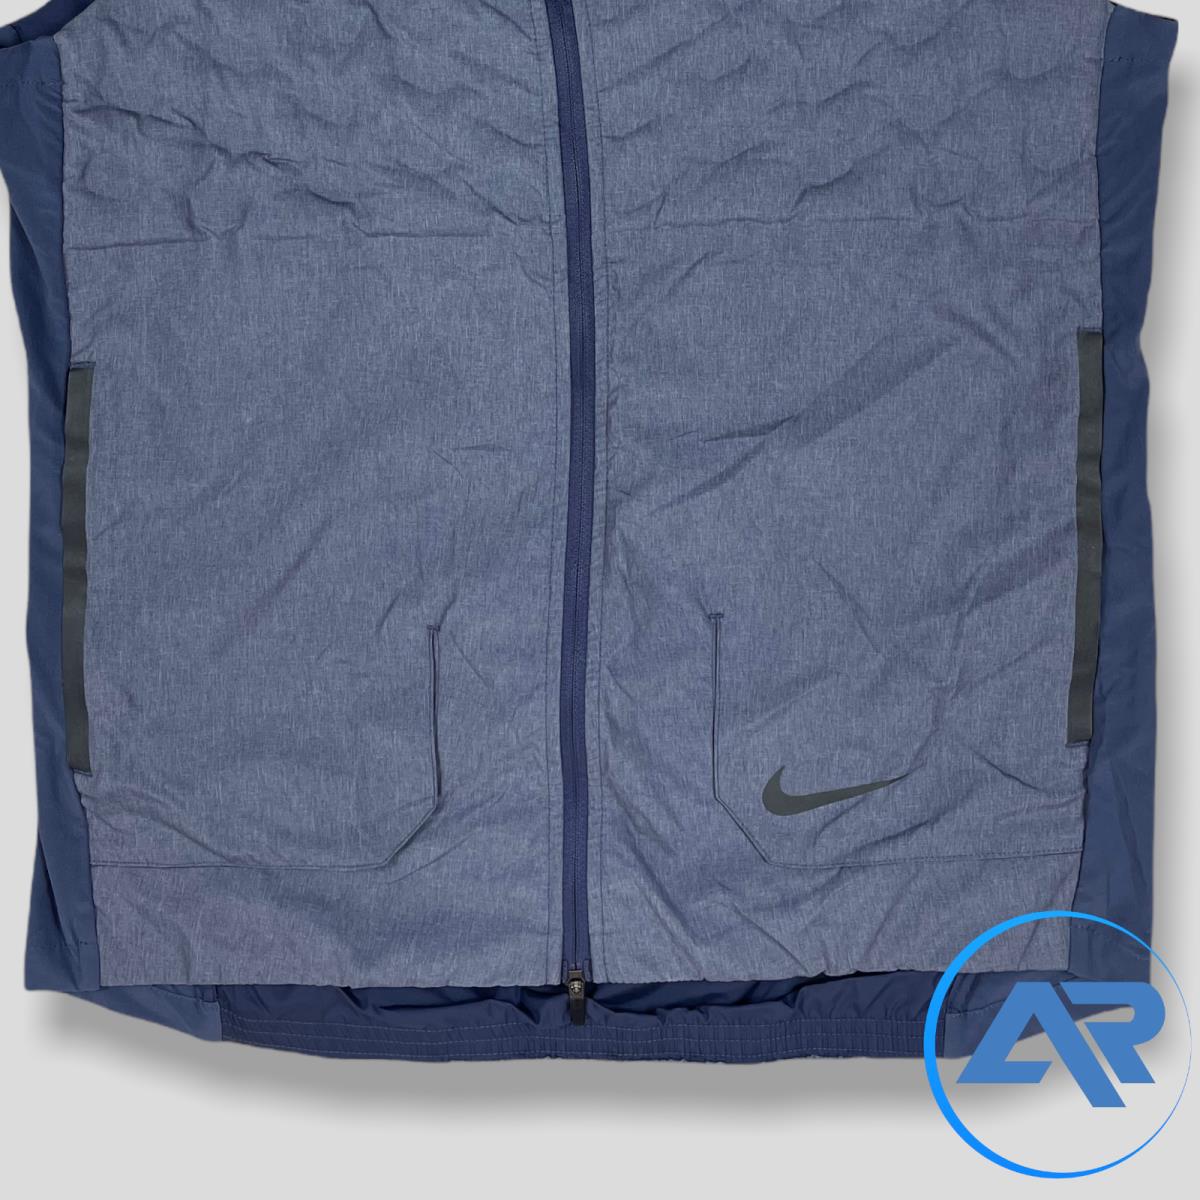 Nike clothing AeroLoft - Indigo Blue 2